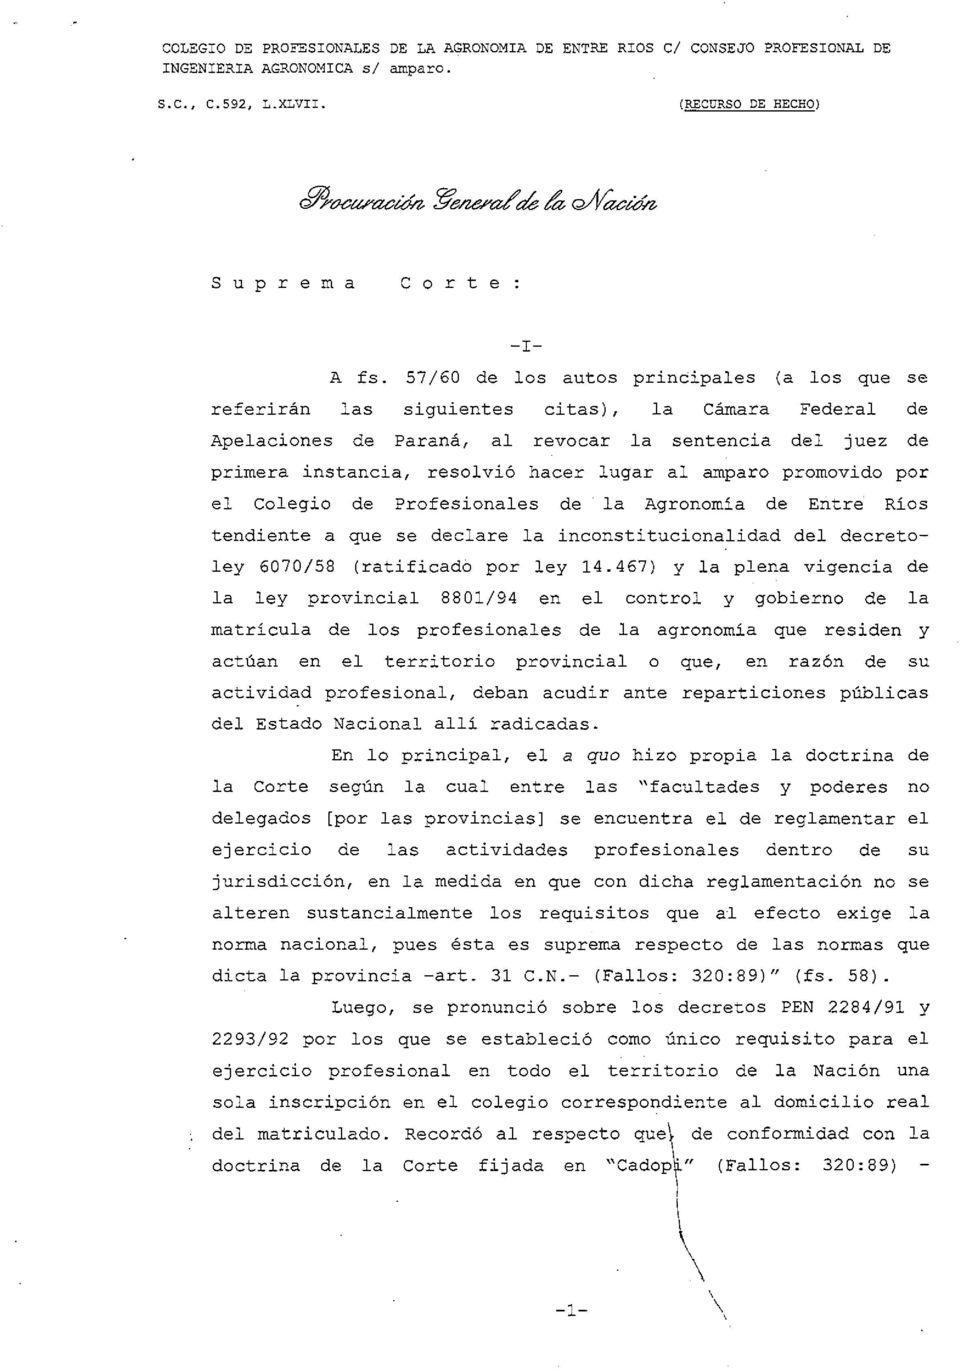 al amparo promovido por el Colegio de Profesionales de la Agronomía de Entre Ríos tendiente a que se declare la inconstitucionalidad del decretoley 6070/58 (ratificado por ley 14.